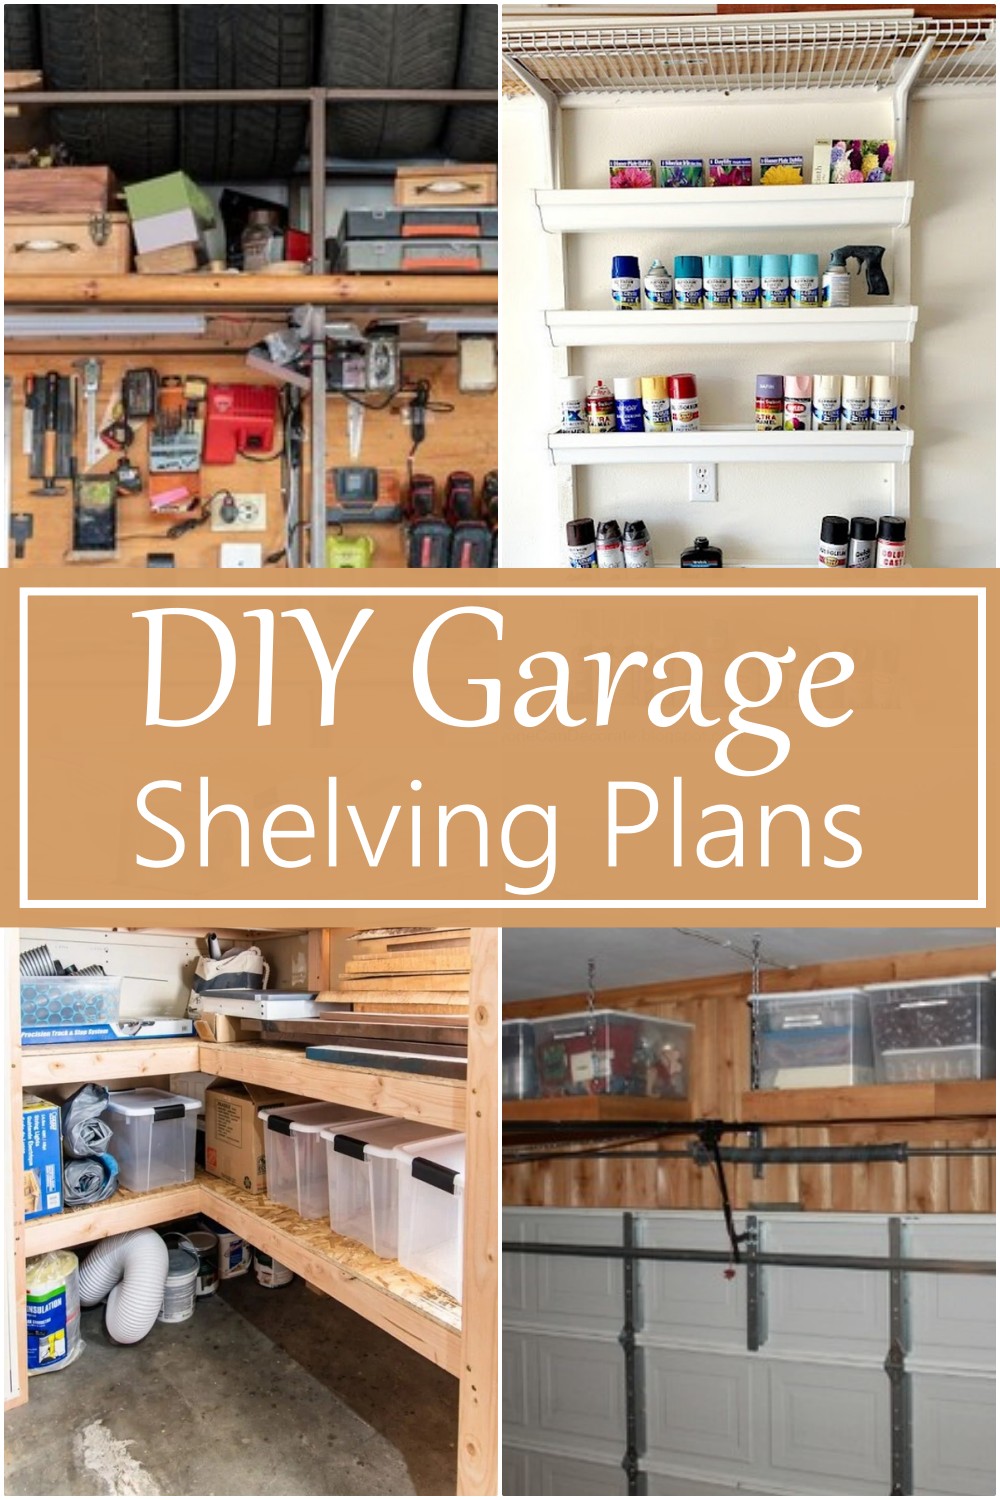 DIY Garage Shelving Plans